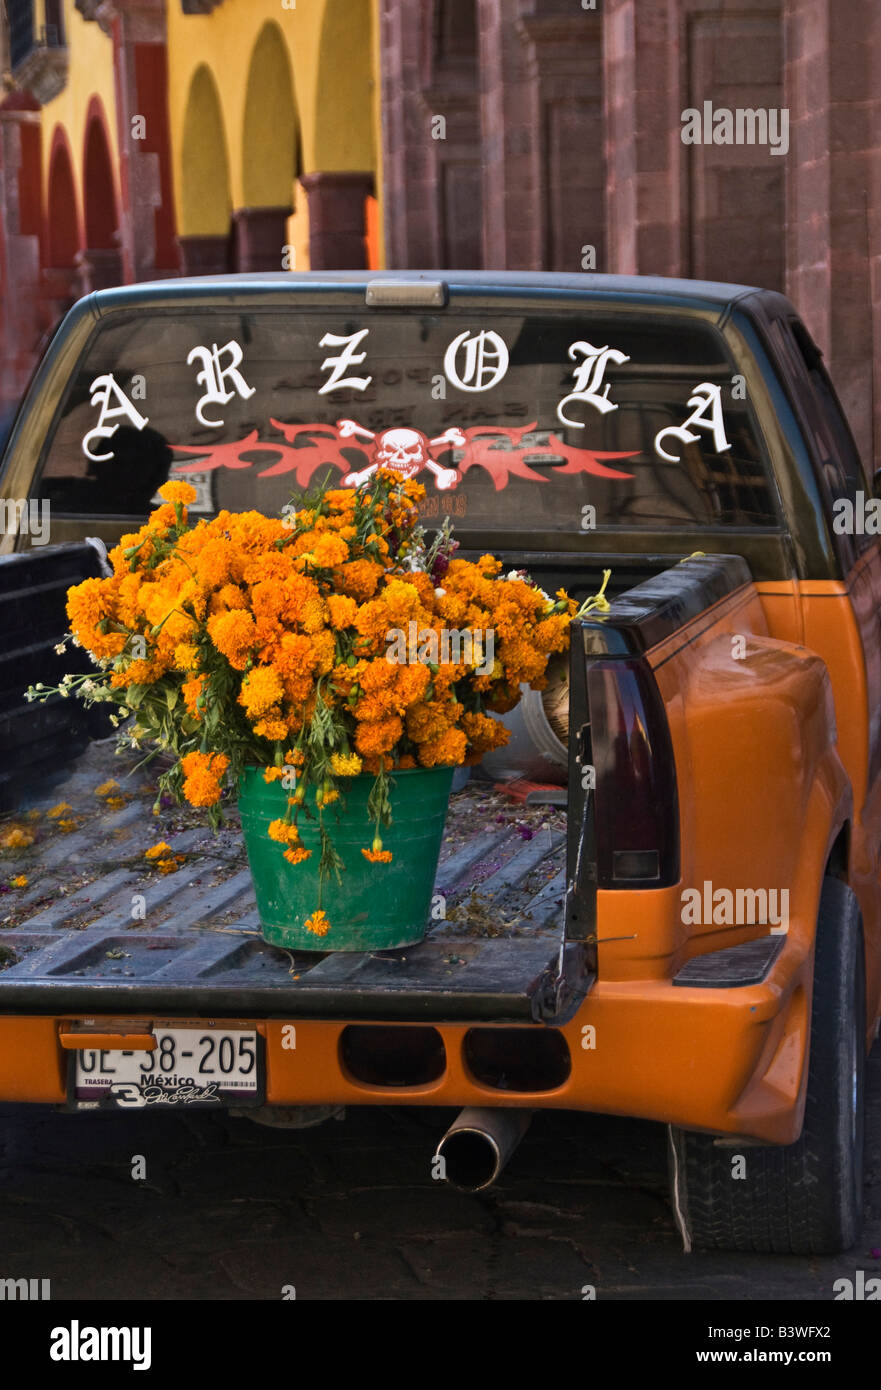 Mexiko, San Miguel de Allende. Pickup-Truck hält gemeinsame Blumen für die Auslieferung an Tag der Toten feiern. Stockfoto